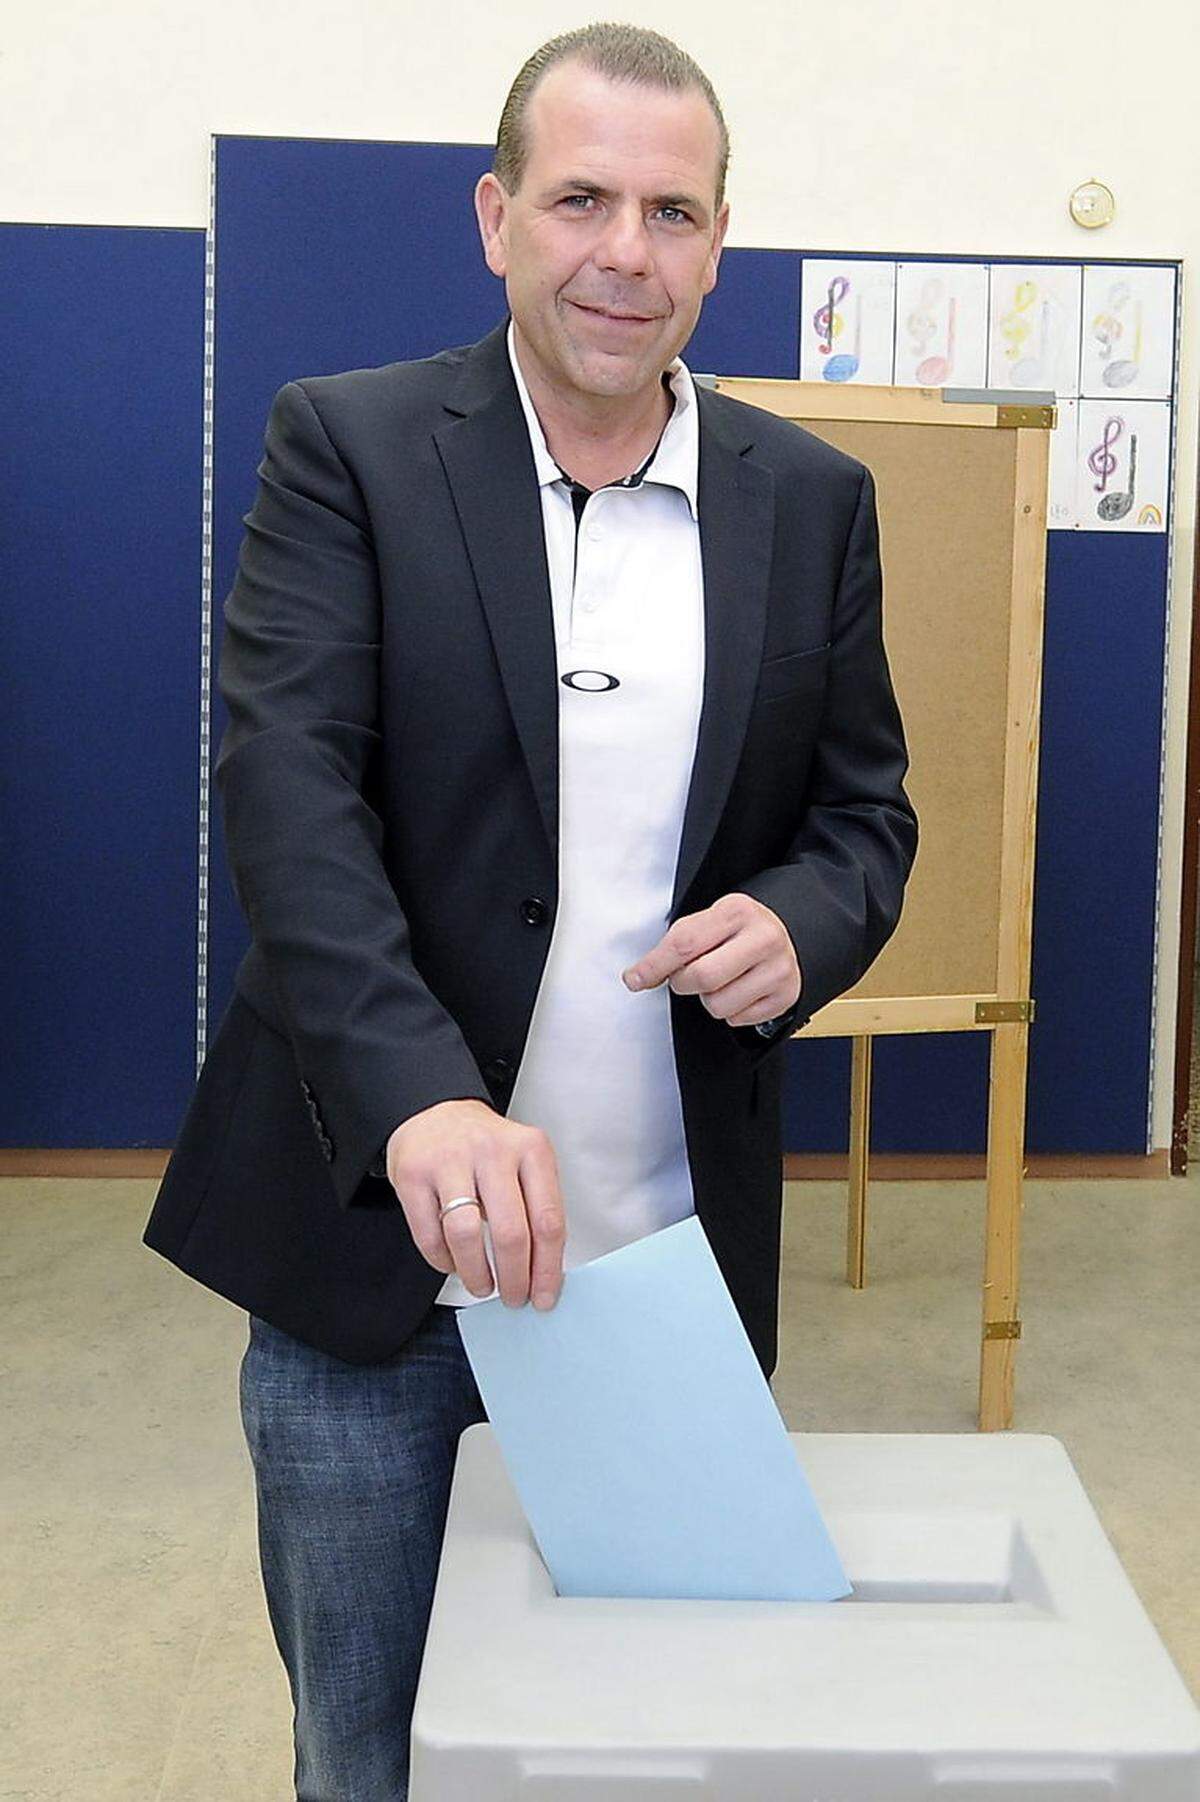 FPÖ-Spitzenkandidat Harald Vilimsky zeigte sich erfreut über das "Sensationsergebnis". "Wir sind der Sieger des Abends, alle anderen schauen alt aus."